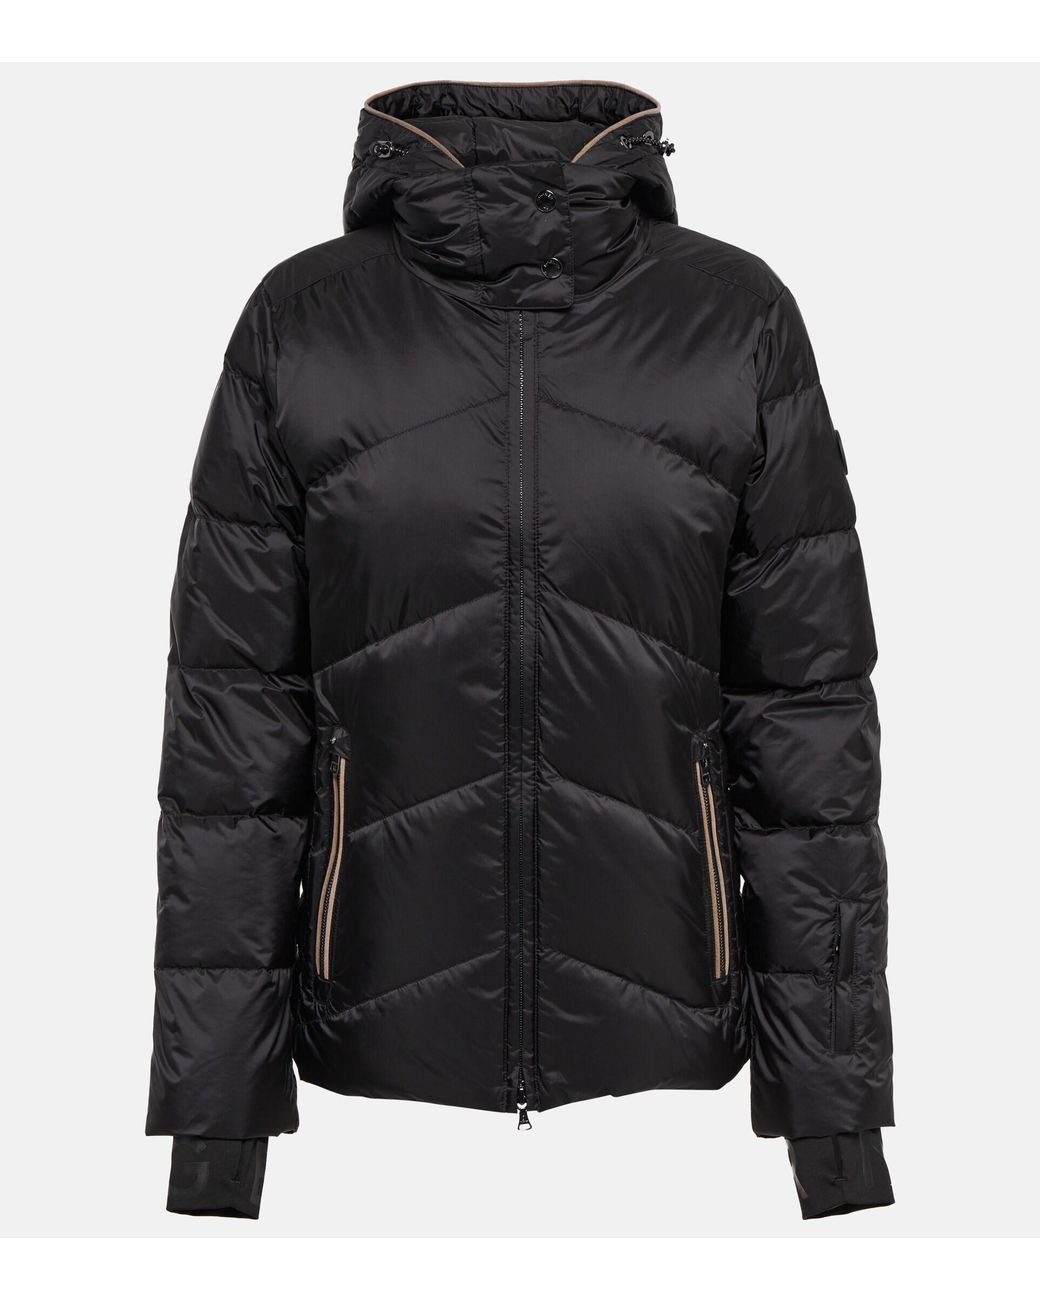 Bogner Callie-d Down Ski Jacket in Black | Lyst